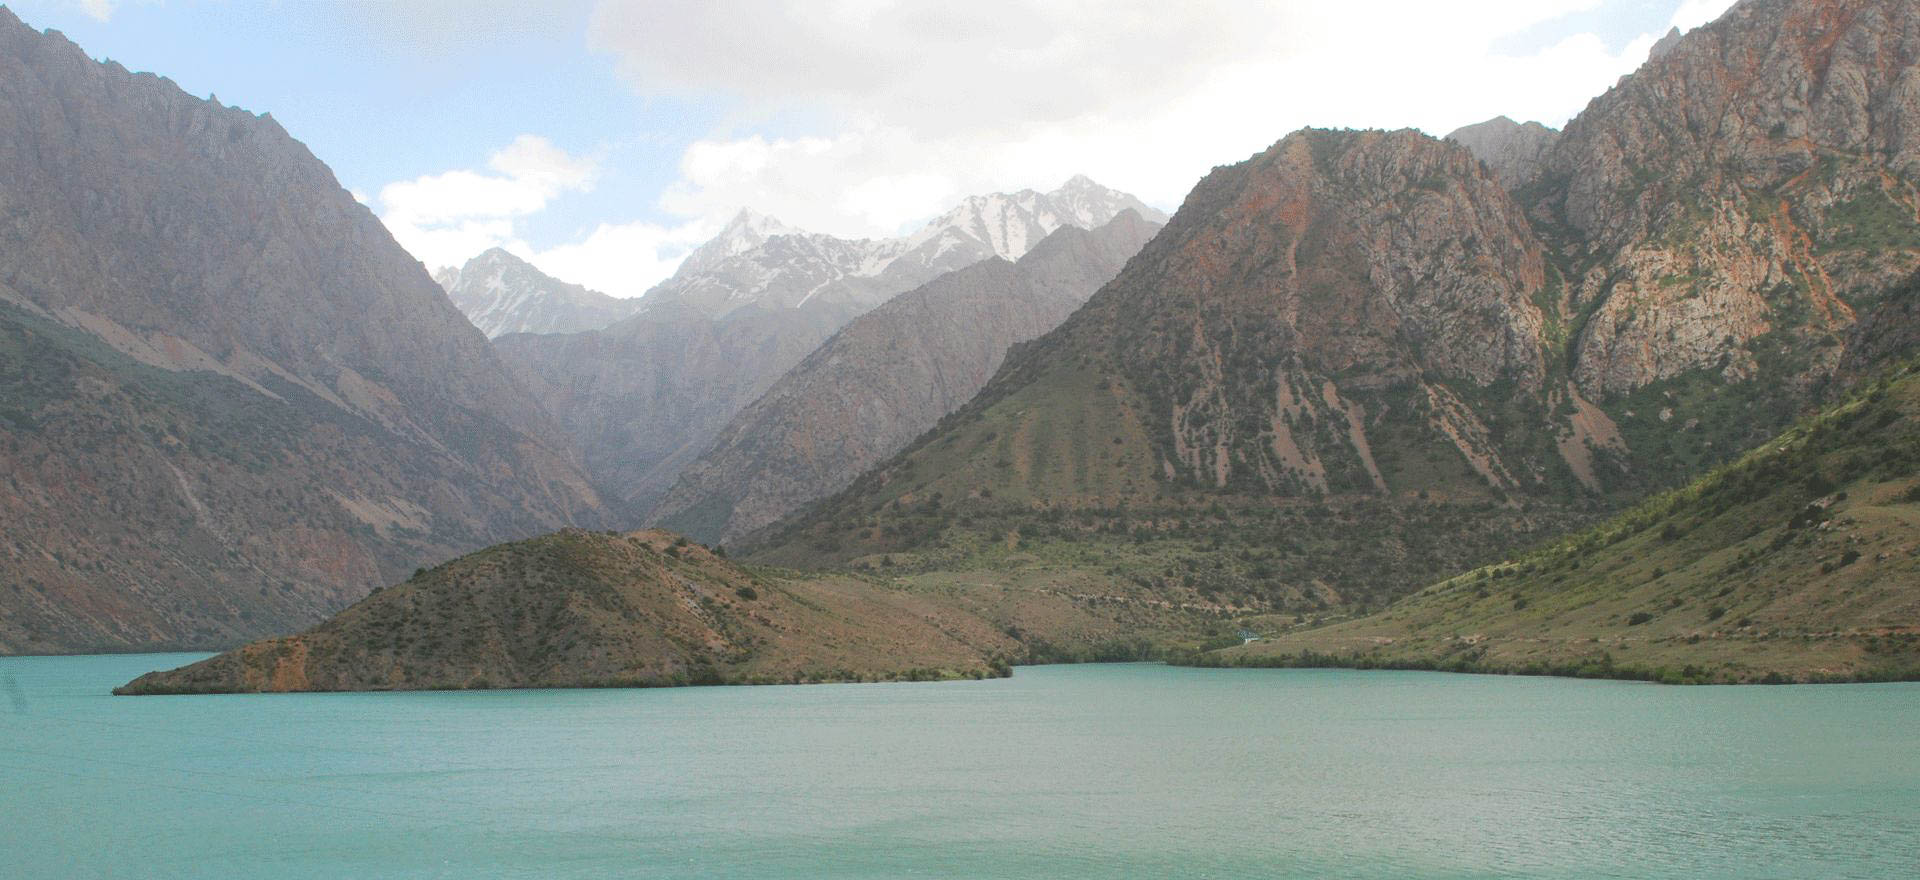 Scenery in the Fann Mountains, Tajikistan - Silk Road tours